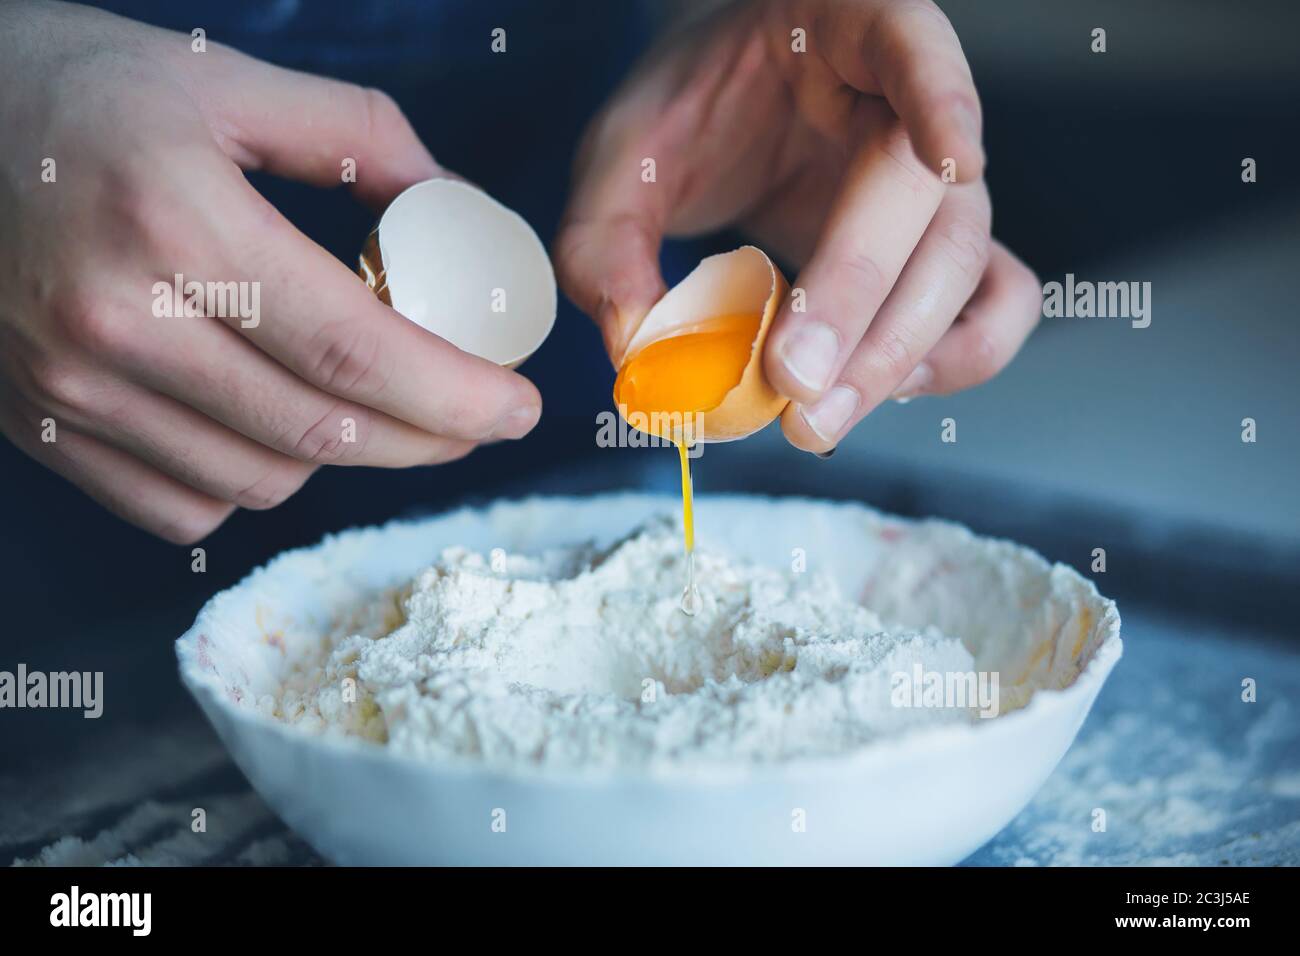 Un homme a brisé la coquille d'un œuf de poulet et est sur le point de le verser dans un bol de farine pour faire de la pâte. Cuisine maison. Banque D'Images